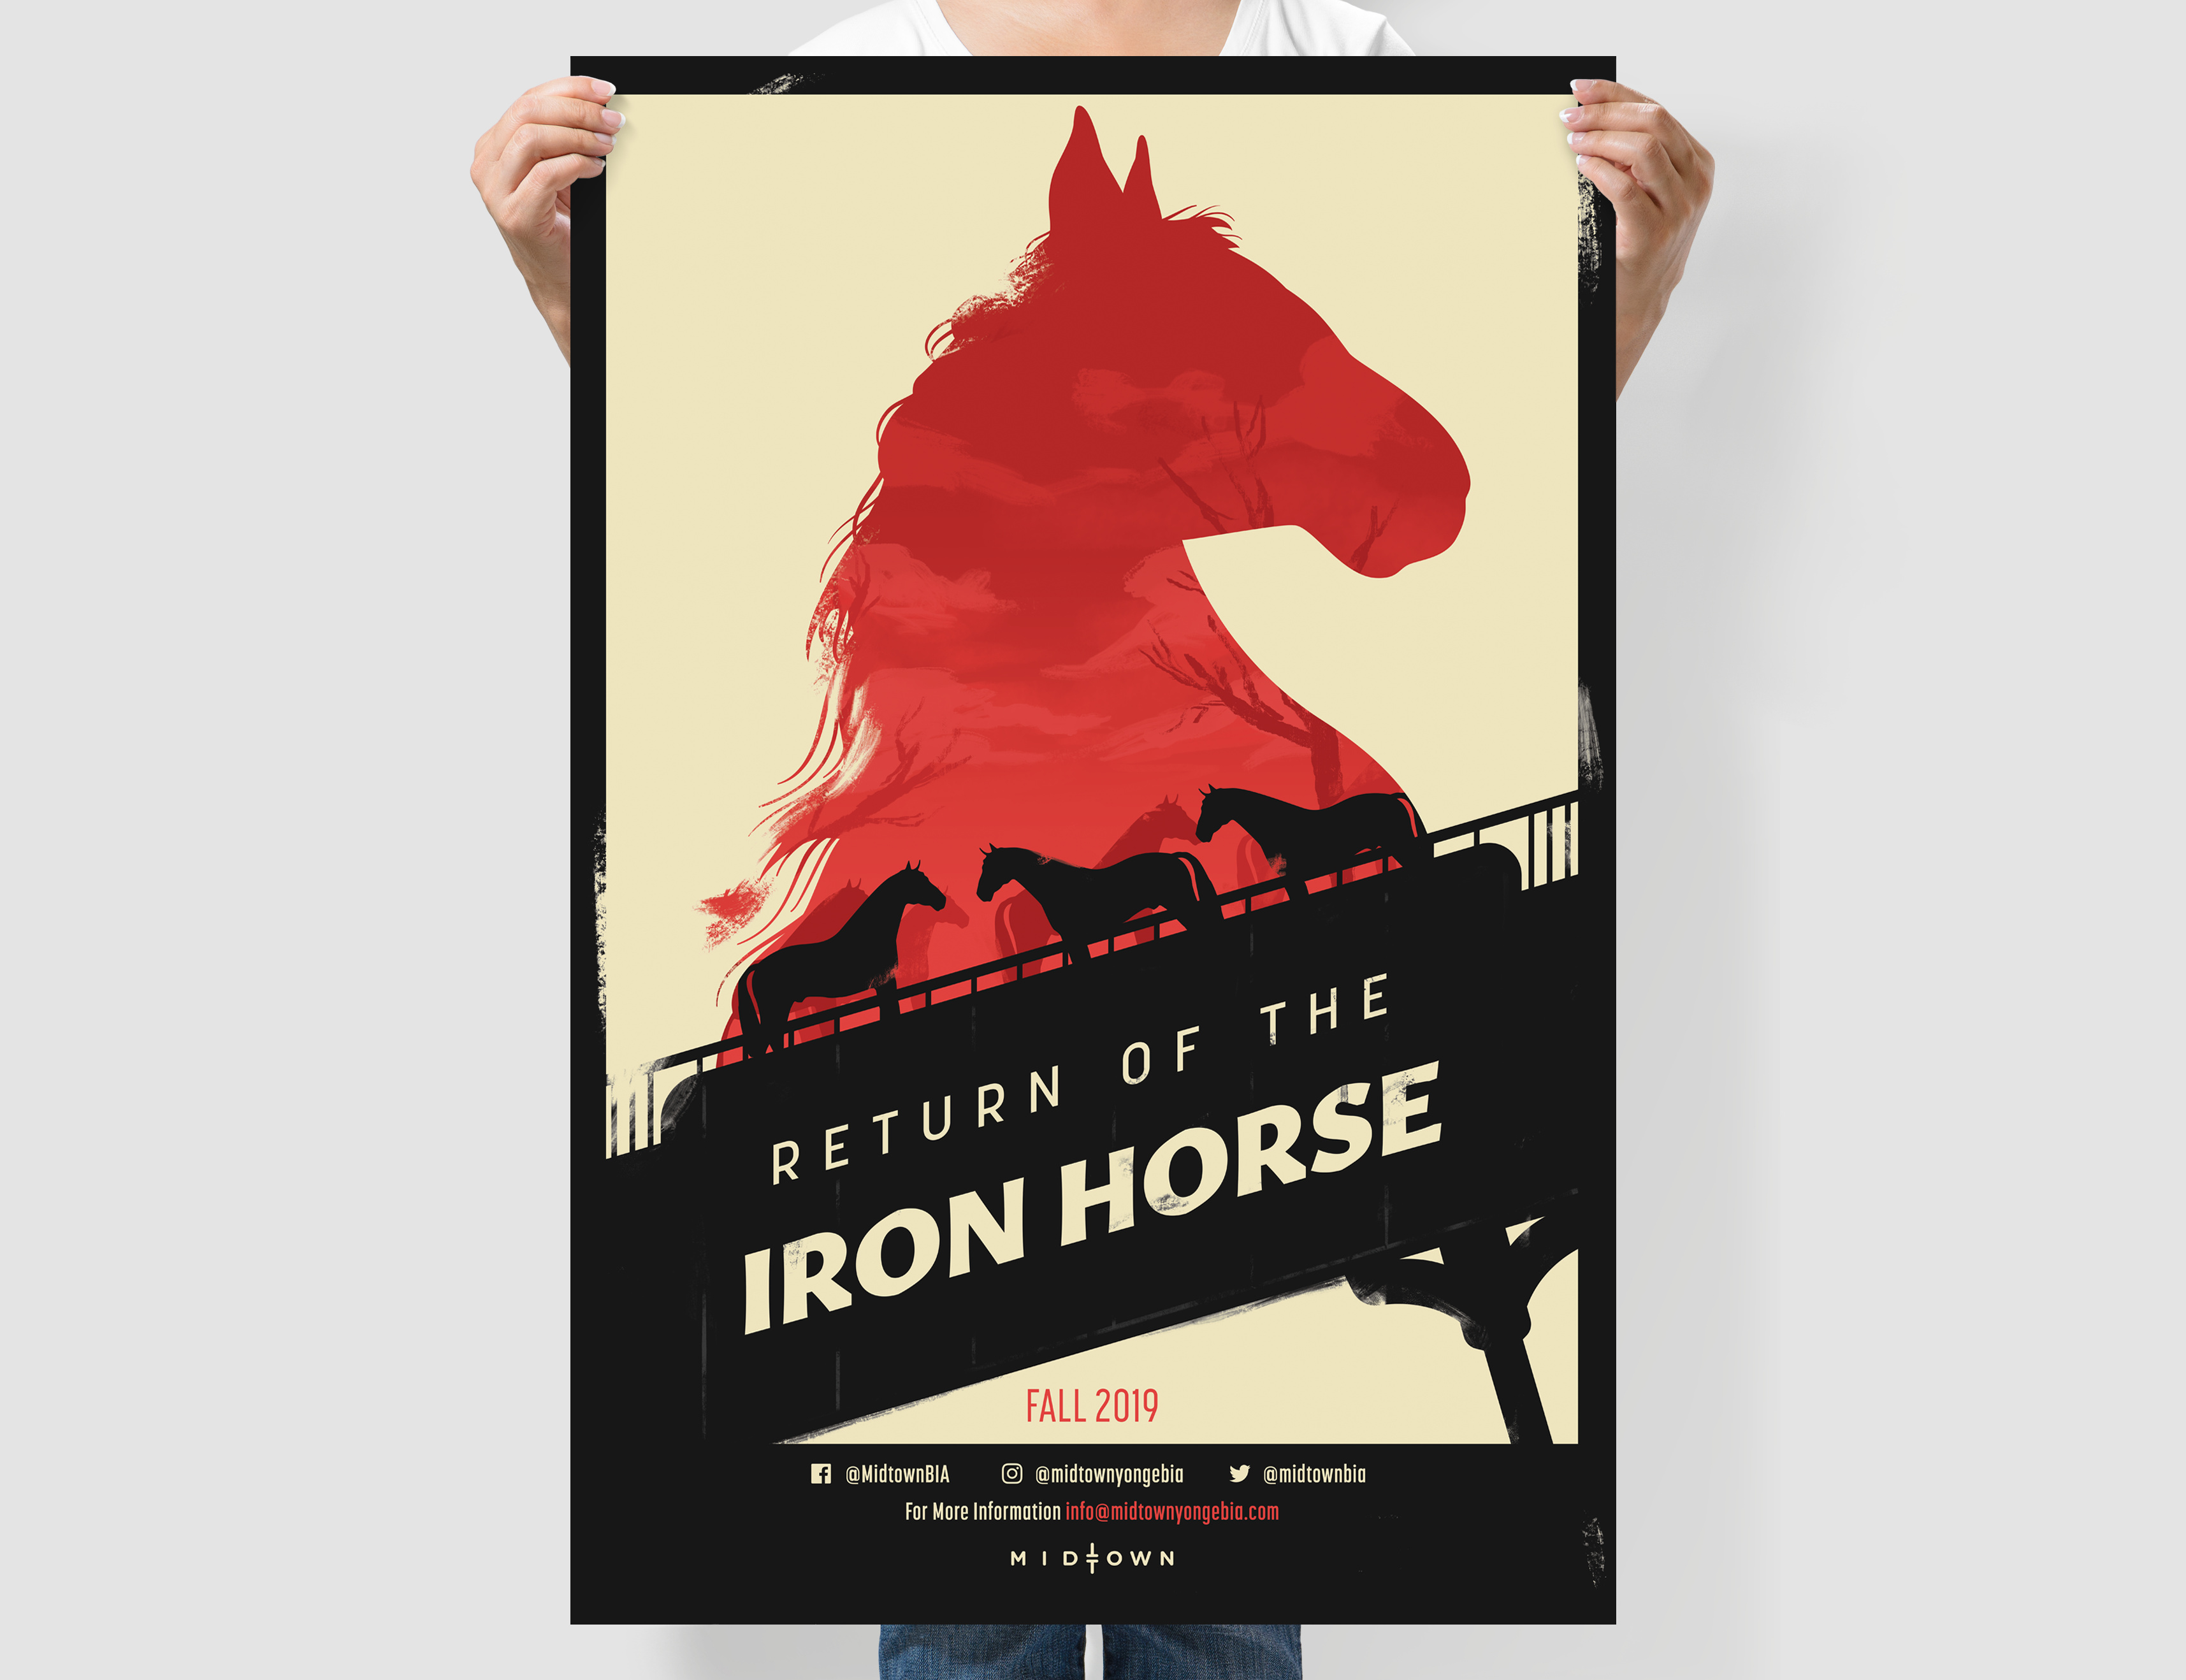 馬に関する映画のオリジナル印刷のポスターを持つ人